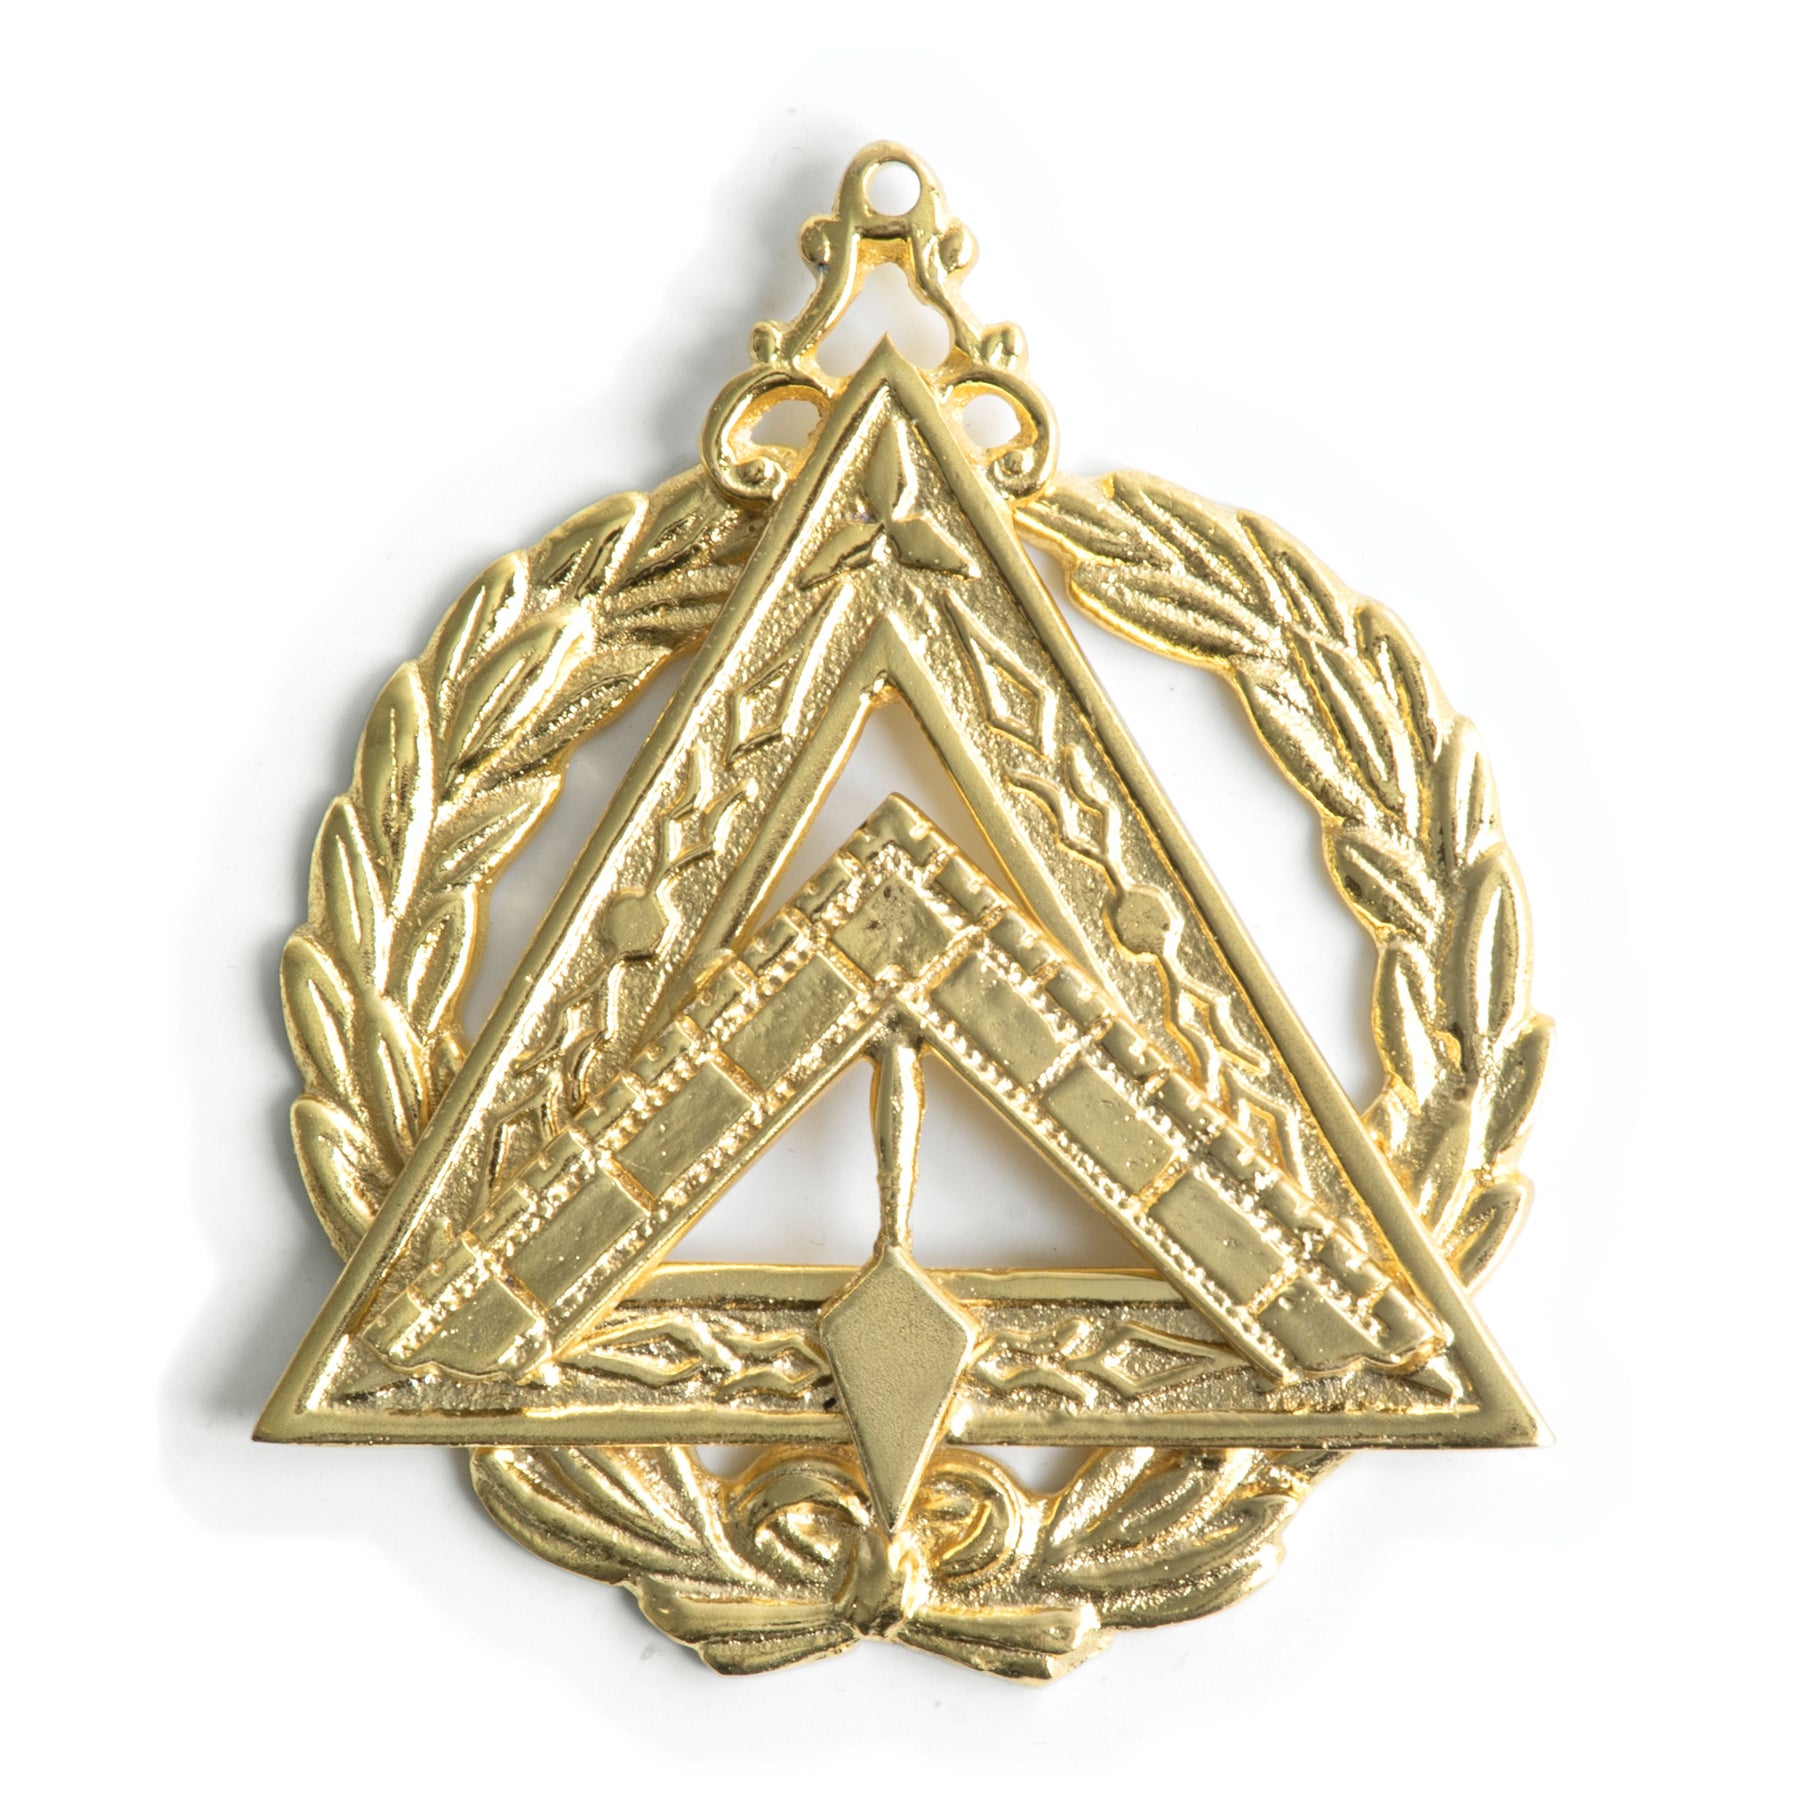 Grand Master Royal & Select Masters Officer Collar Jewel - Gold Plated - Bricks Masons